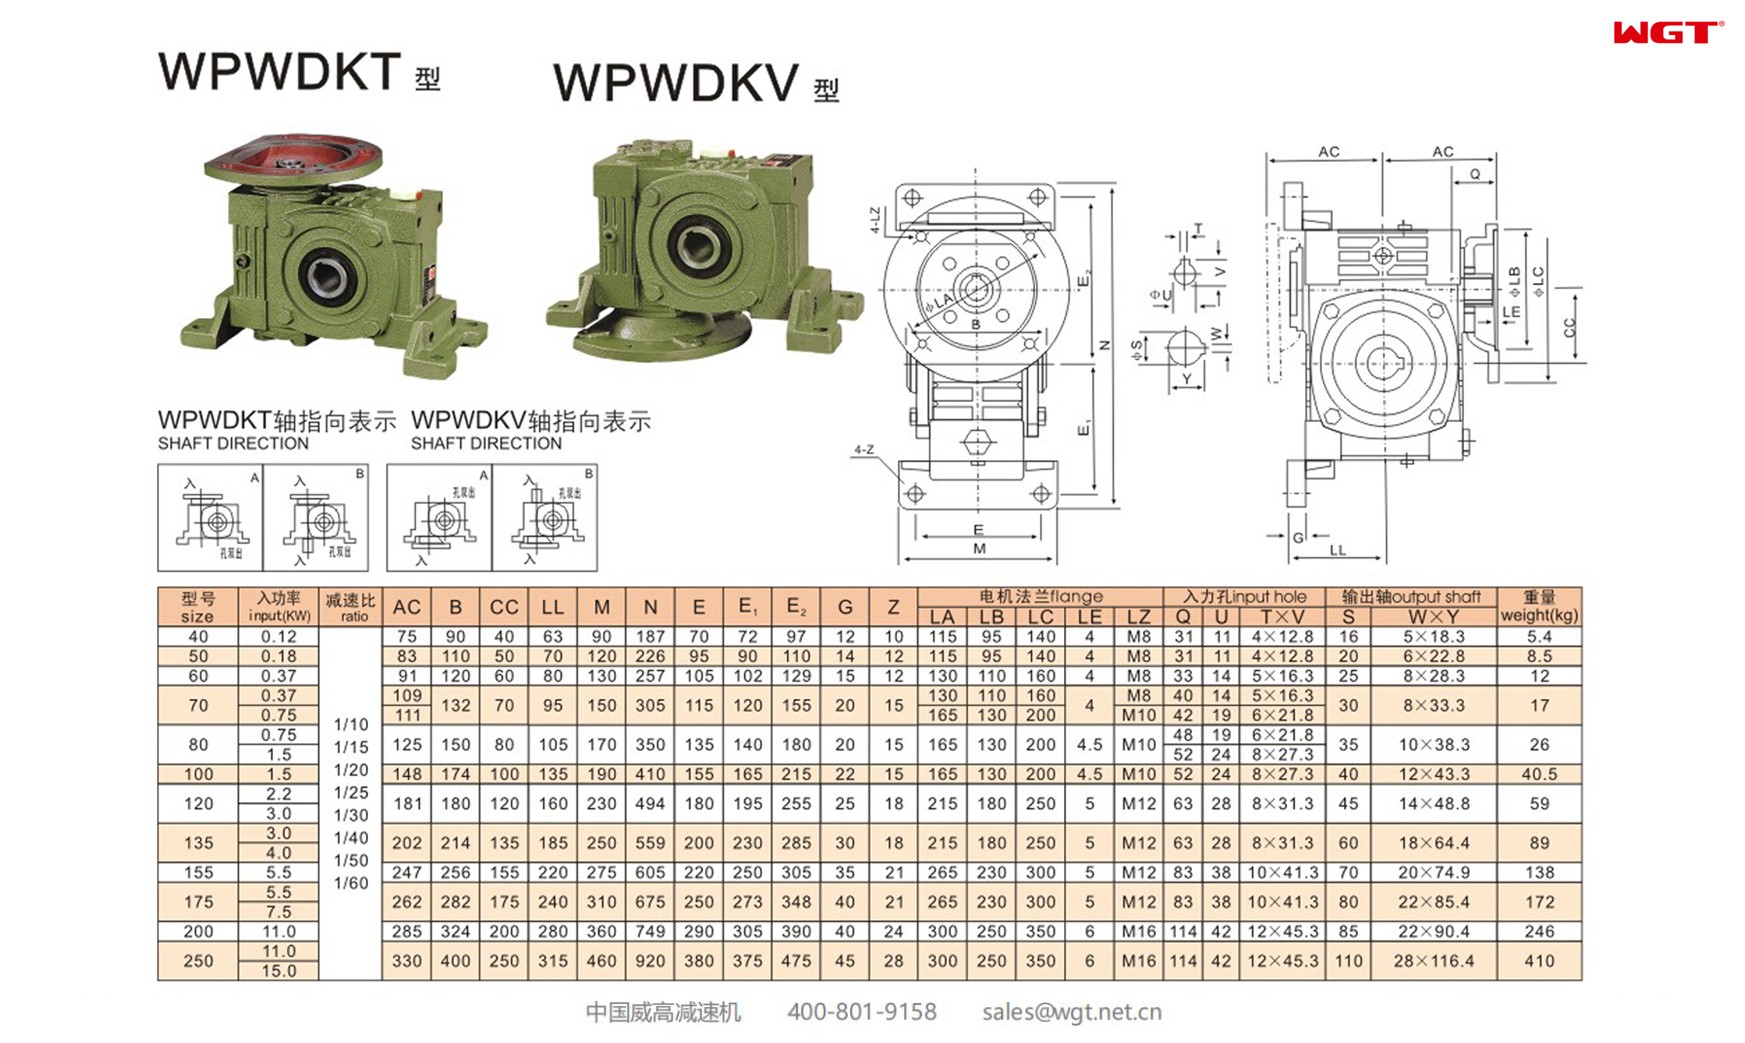 WPWDKT135 worm gear reducer universal speed reducer